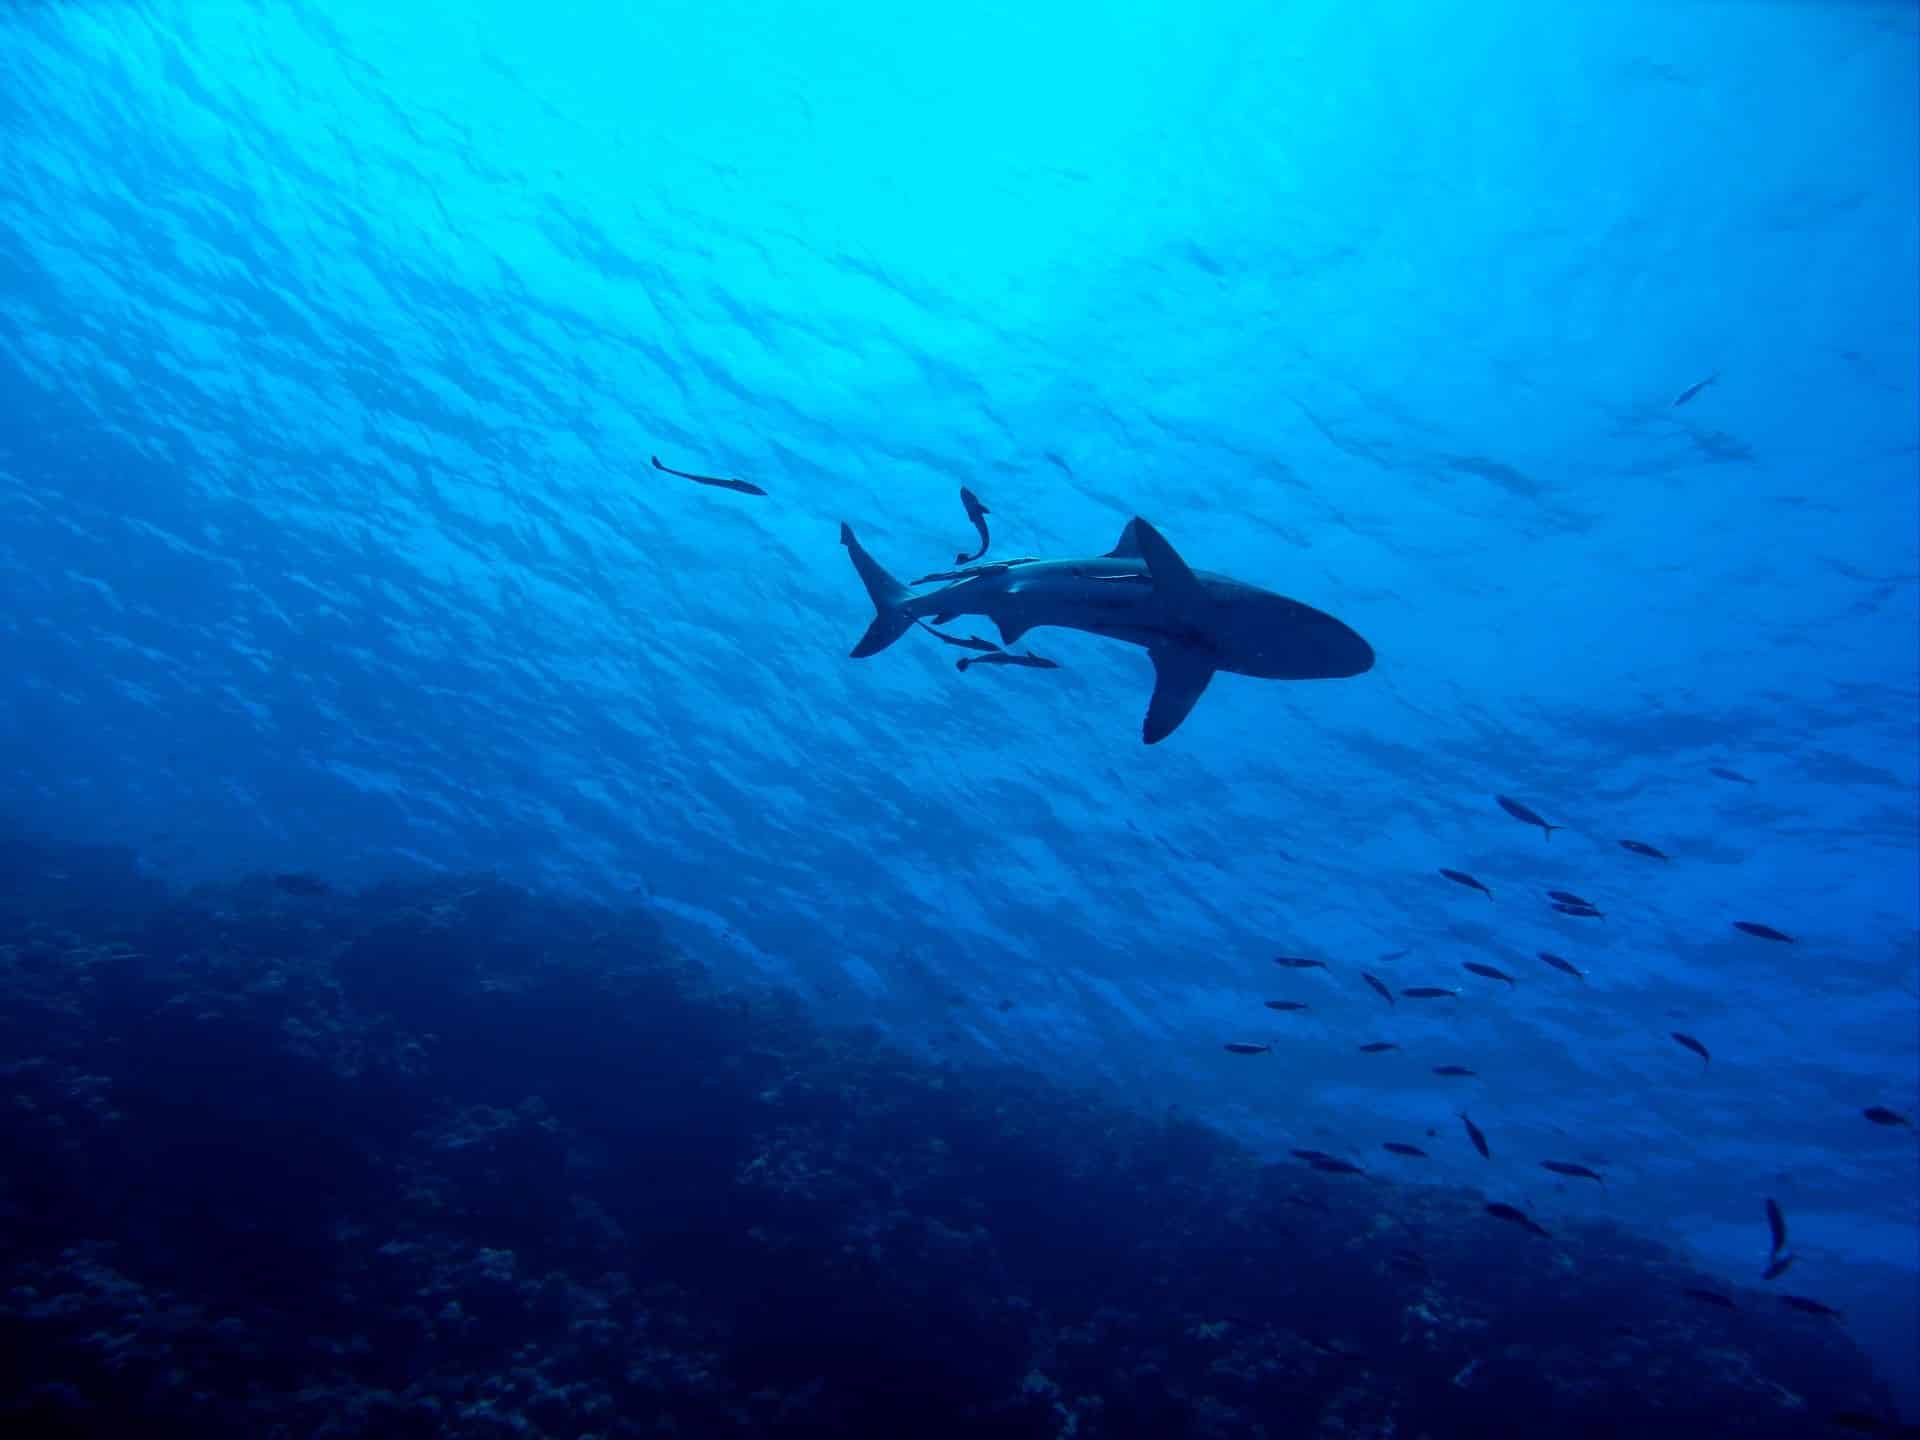 Hai-Arten im Mittelmeer – gefährlich für Urlauber auf Mallorca und Co?